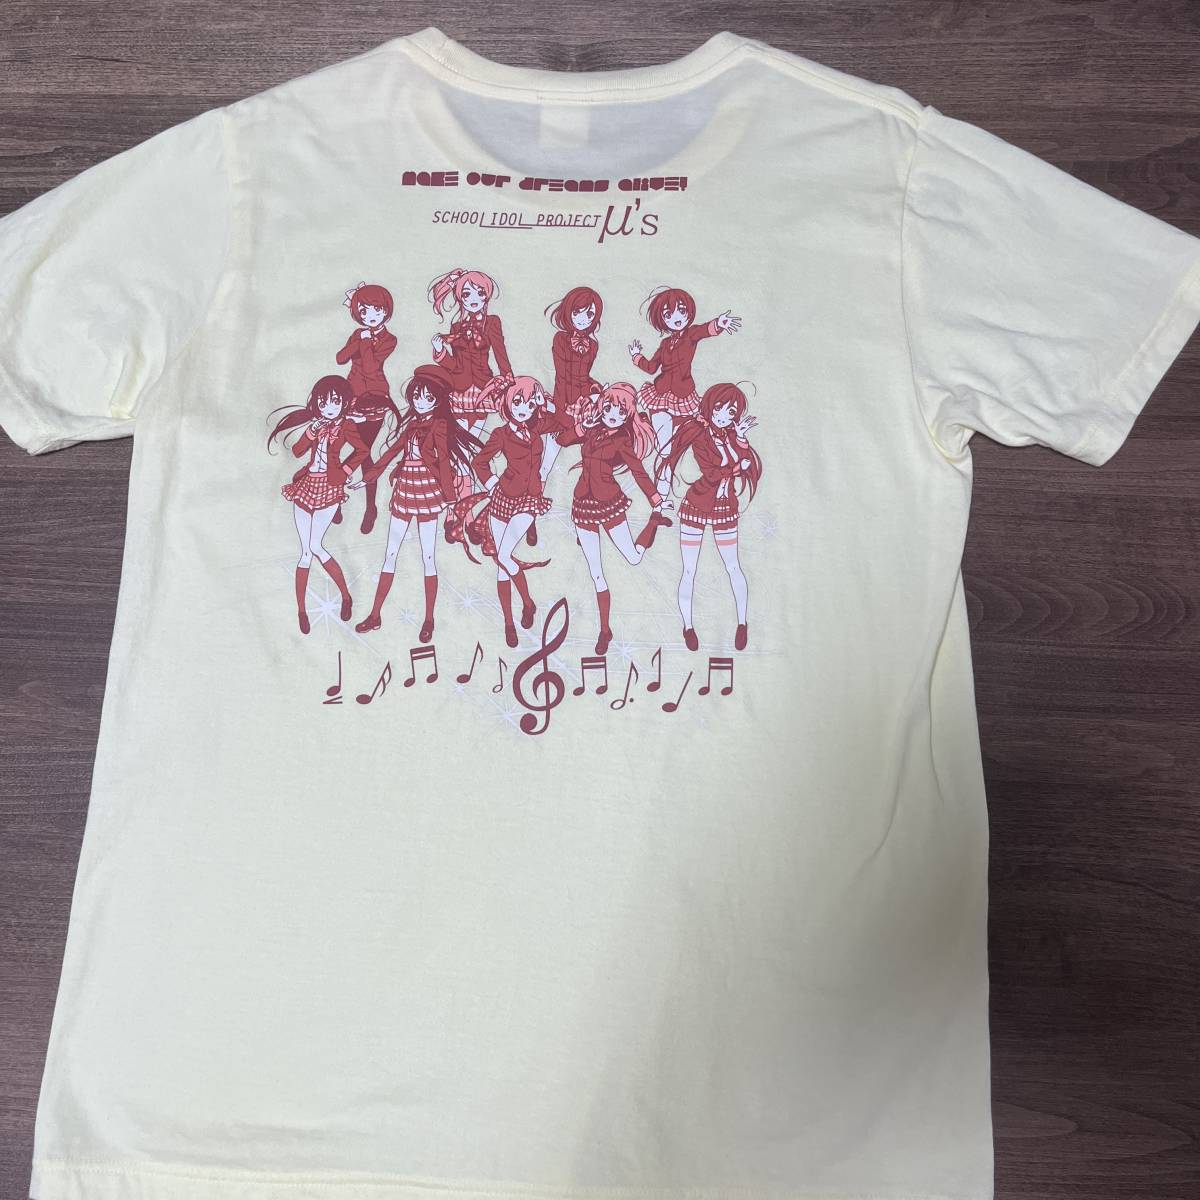 ラブライブ! Tシャツ (Love Live! T-shirt)_画像2